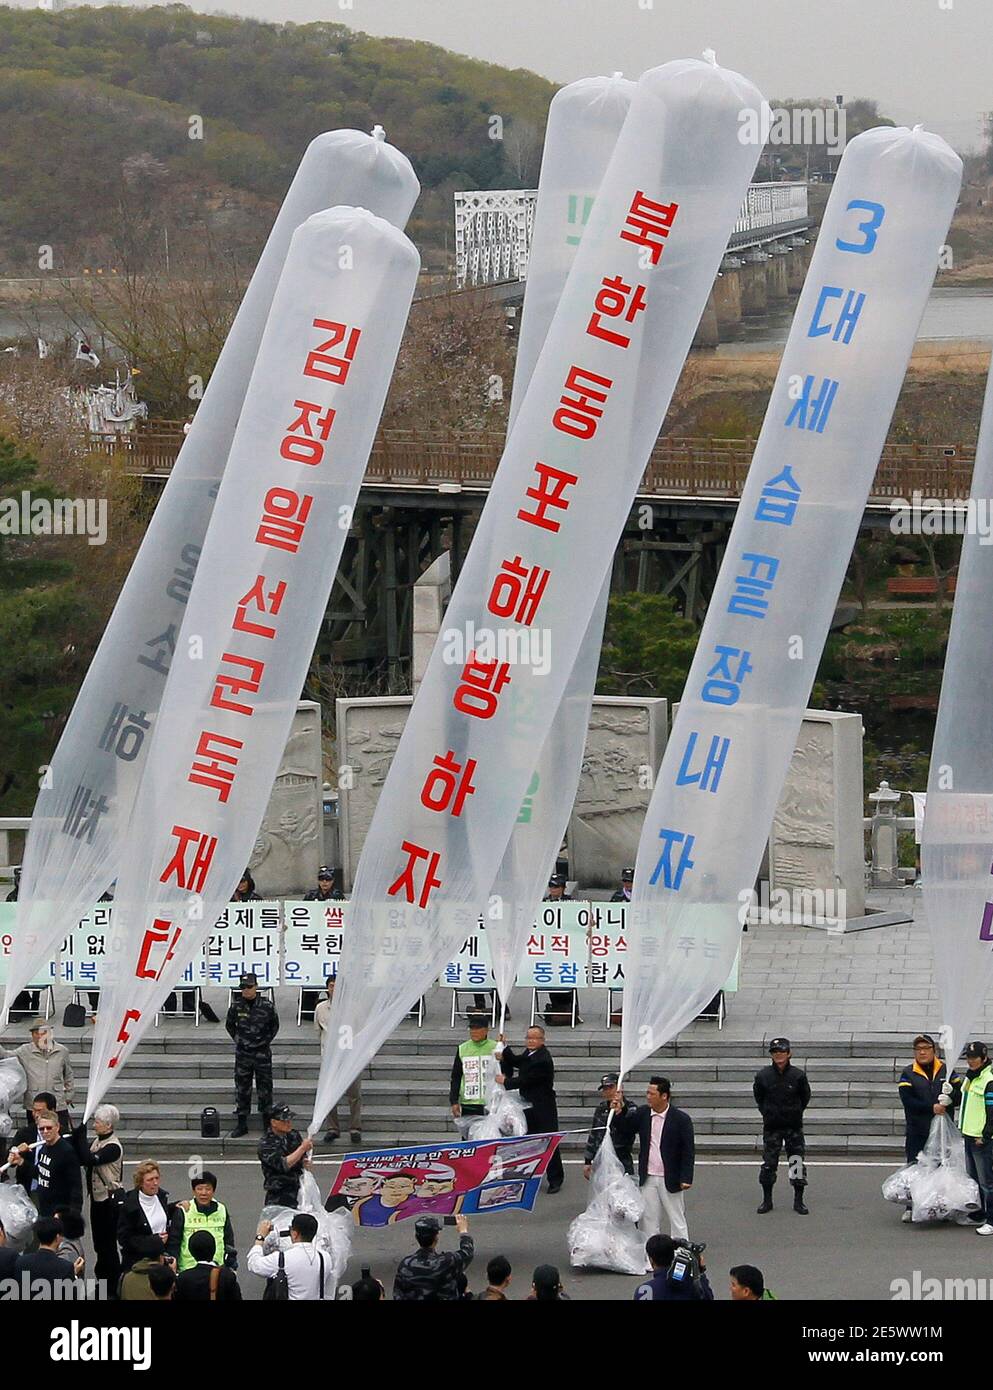 Los ex desertores norcoreanos y los manifestantes conservadores se preparan para liberar globos que portan volantes anti-norcoreanos hacia el norte en el pabellón de Imjingak cerca de la zona desmilitarizada que separa las dos Coreas en Paju, a unos 55 km (34 millas) al norte de Seúl, 29 de abril de 2011. Los activistas lanzaron alrededor de 200,000 folletos anti-Pyongyang, DVD anti-Corea del Norte, radios y 1,000 billetes de un dólar el viernes. El líder norcoreano Kim Jong-il está dispuesto a mantener conversaciones directas con Corea del Sur, pero el estado aislado no se disculpará por dos ataques mortales en la península dividida el año pasado, el ex P Foto de stock